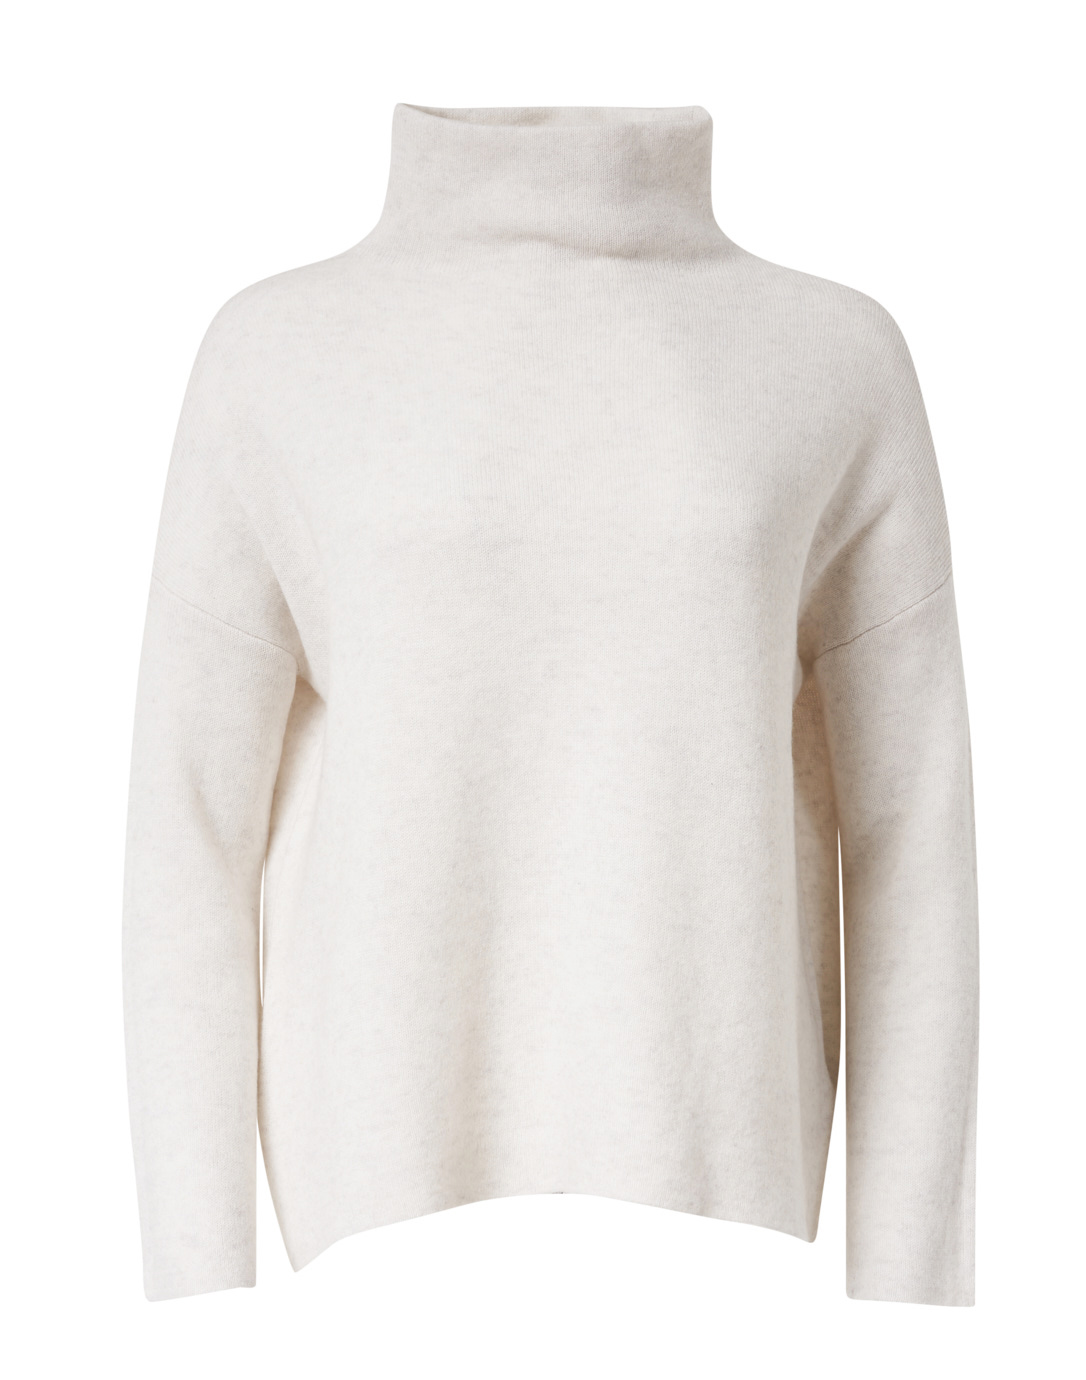 white funnel neck sweatshirt